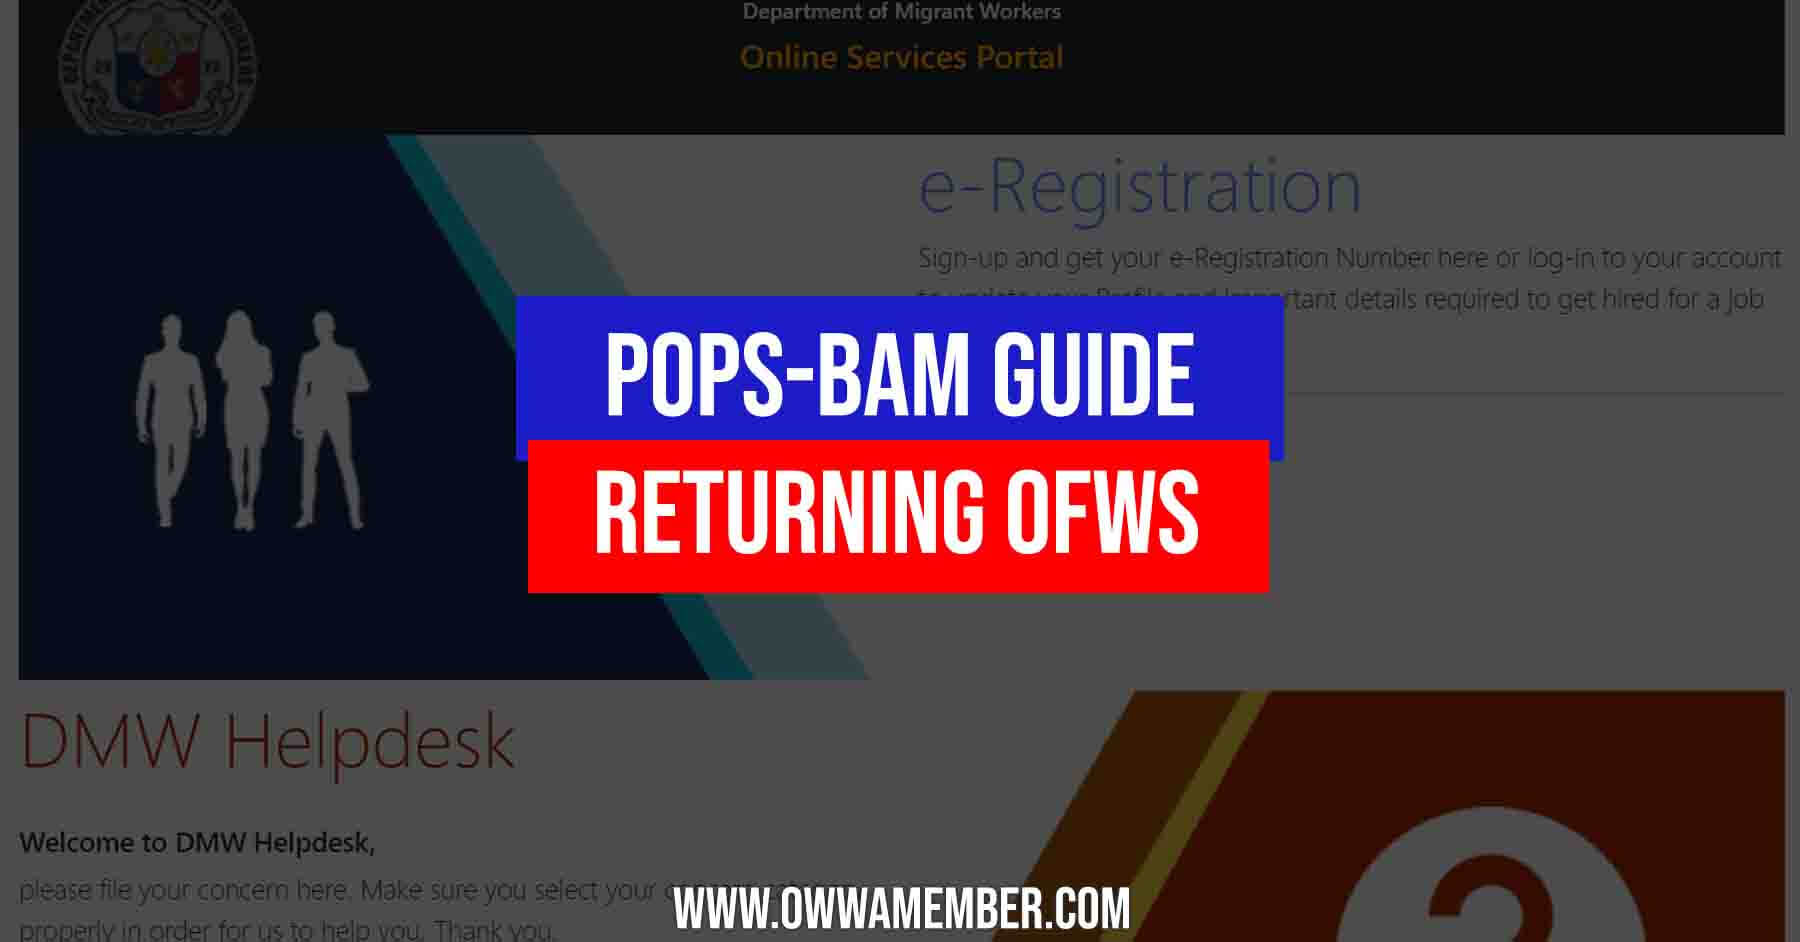 popsbam guide for returning ofws processing online